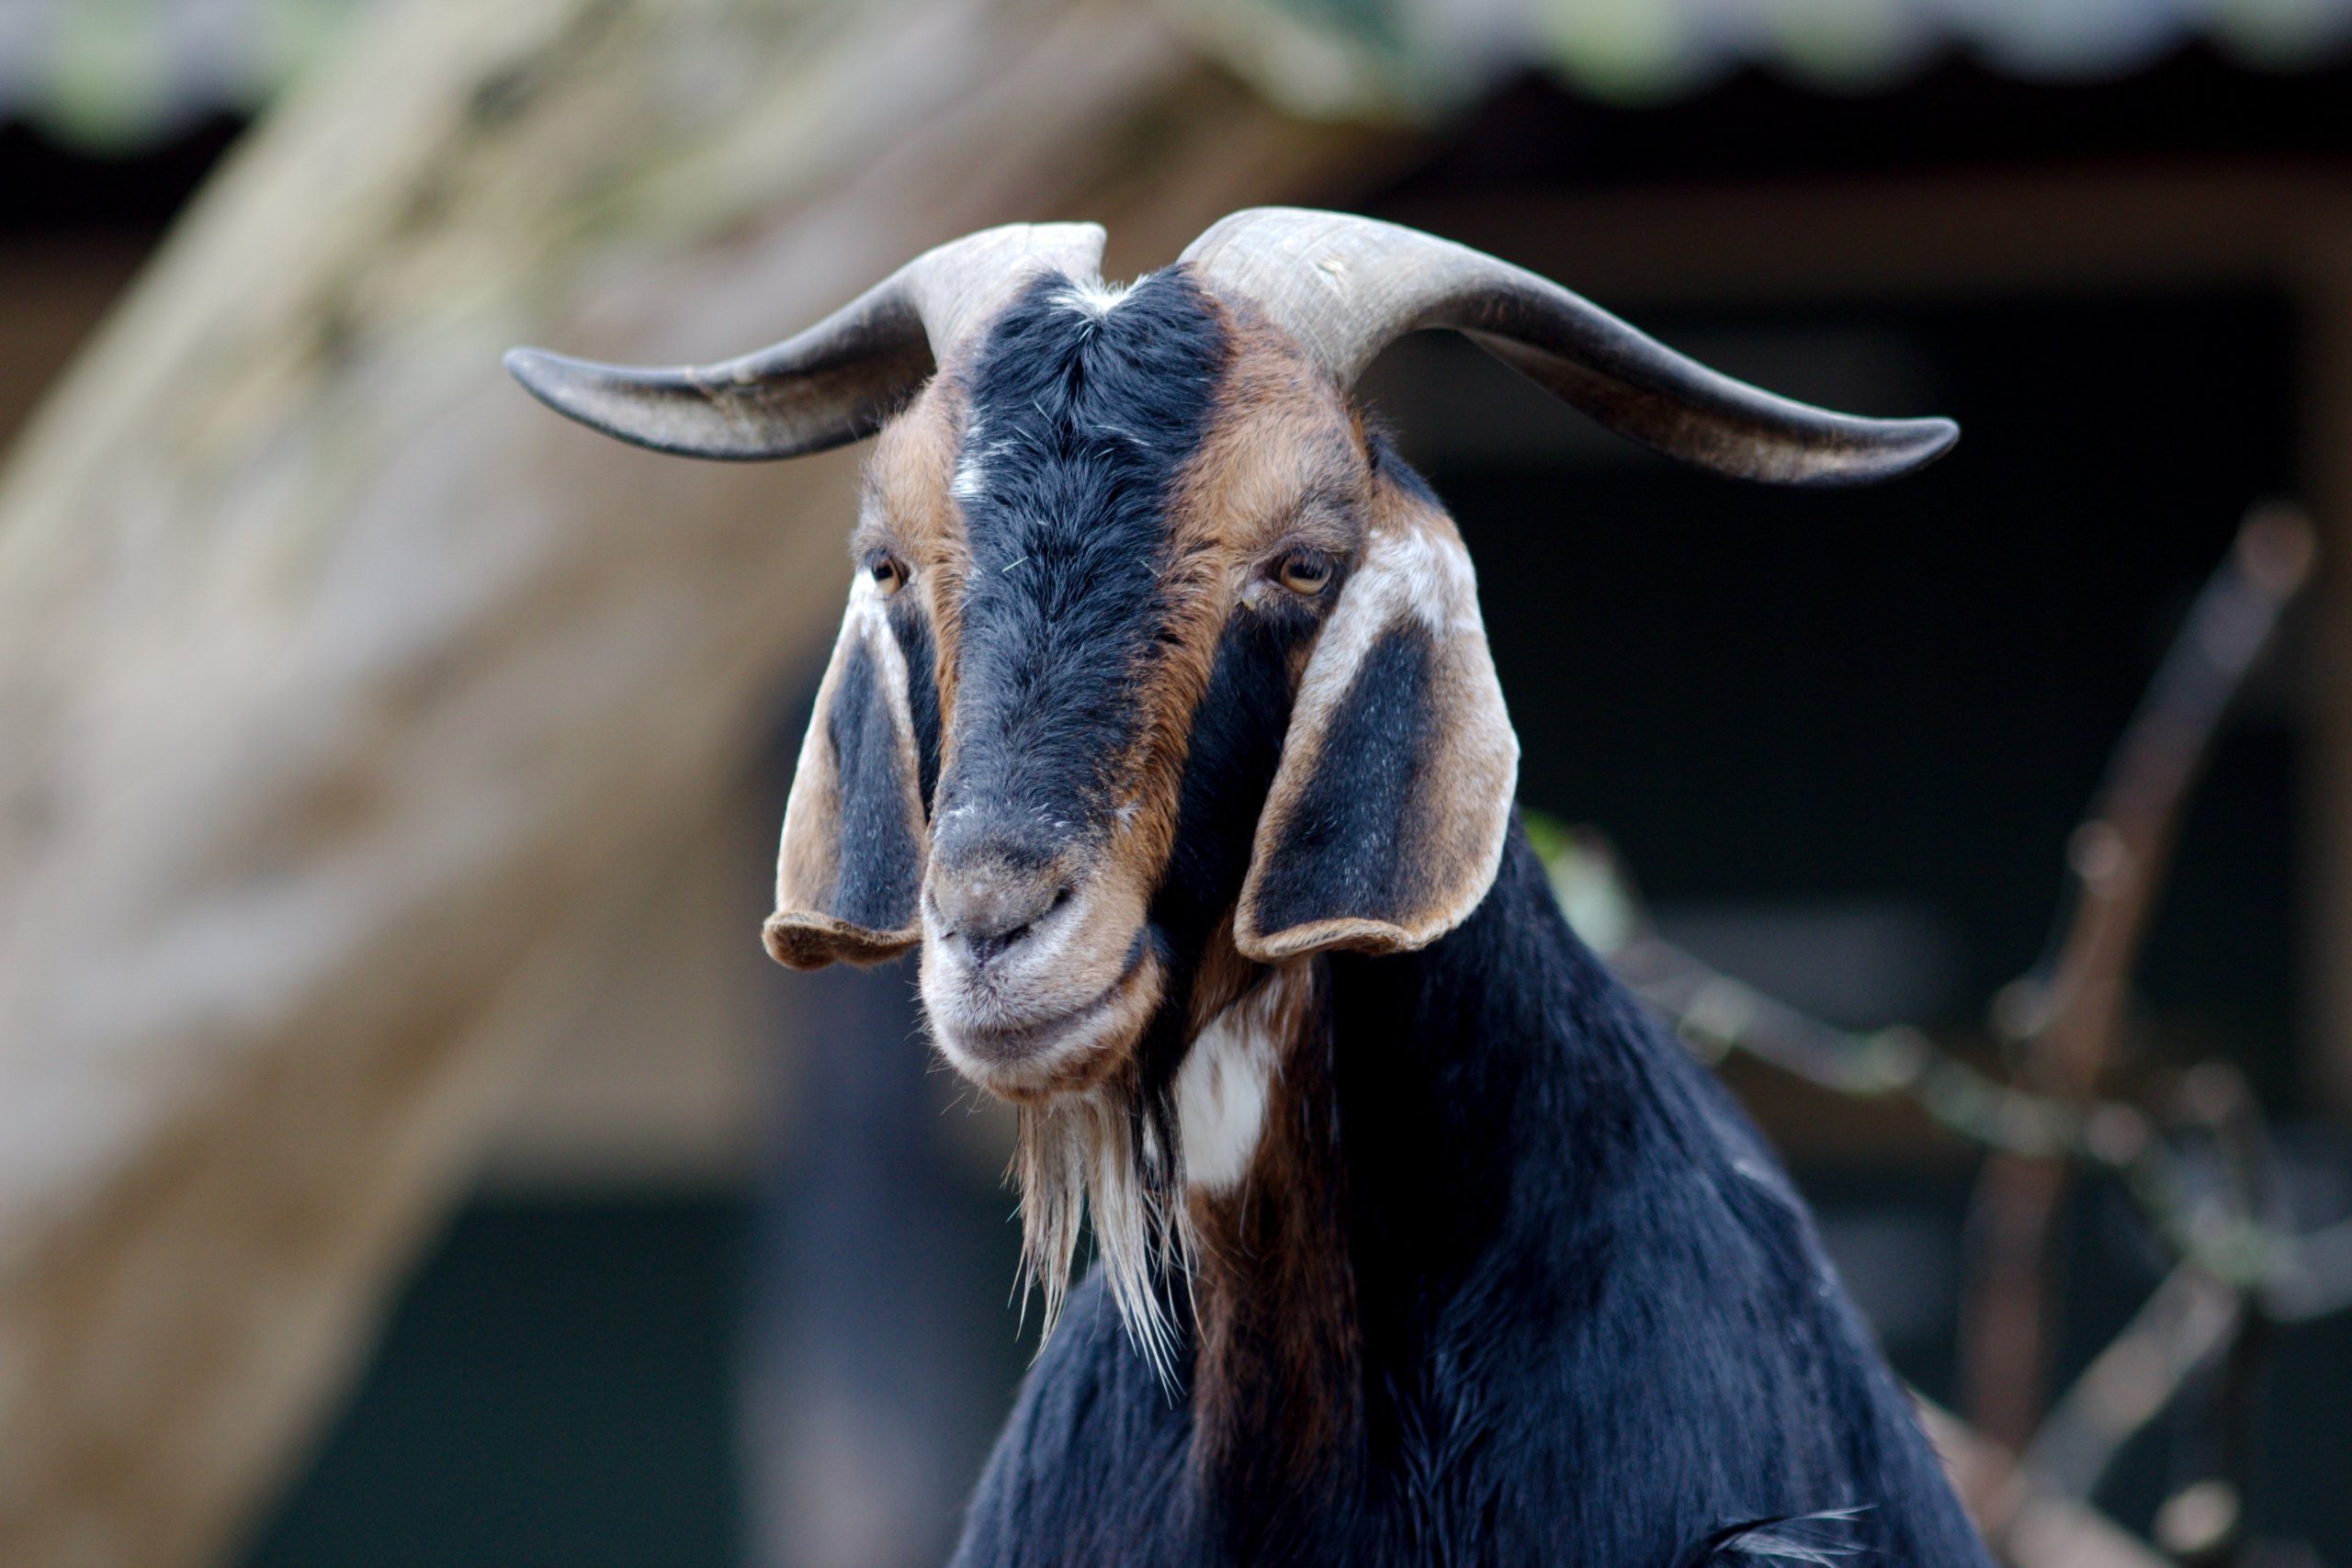 Ушами порода козы